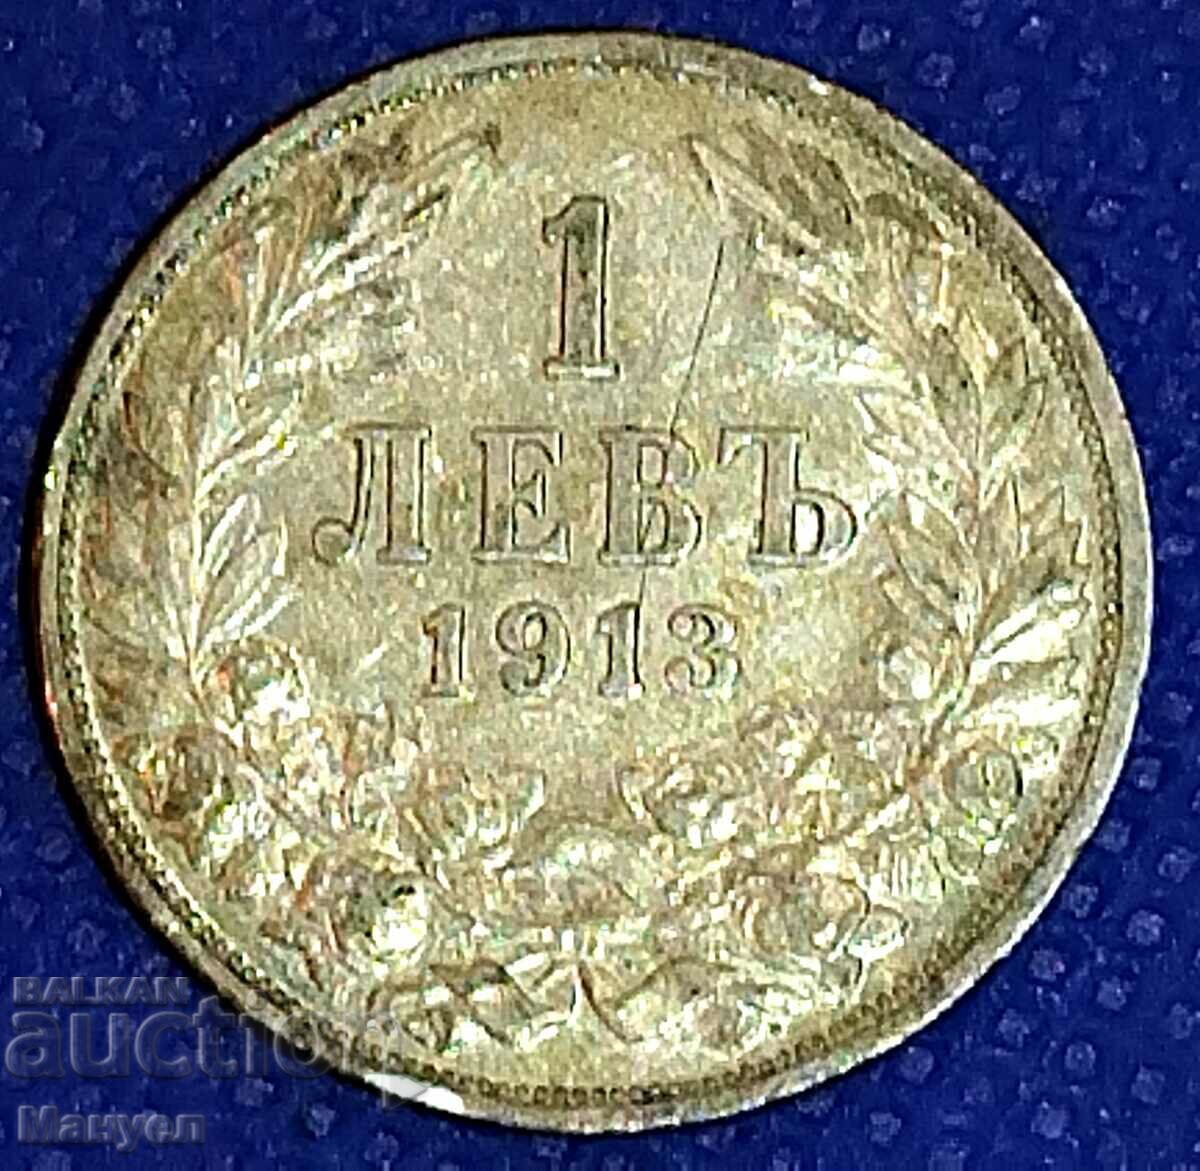 1 nivel de argint - 1913